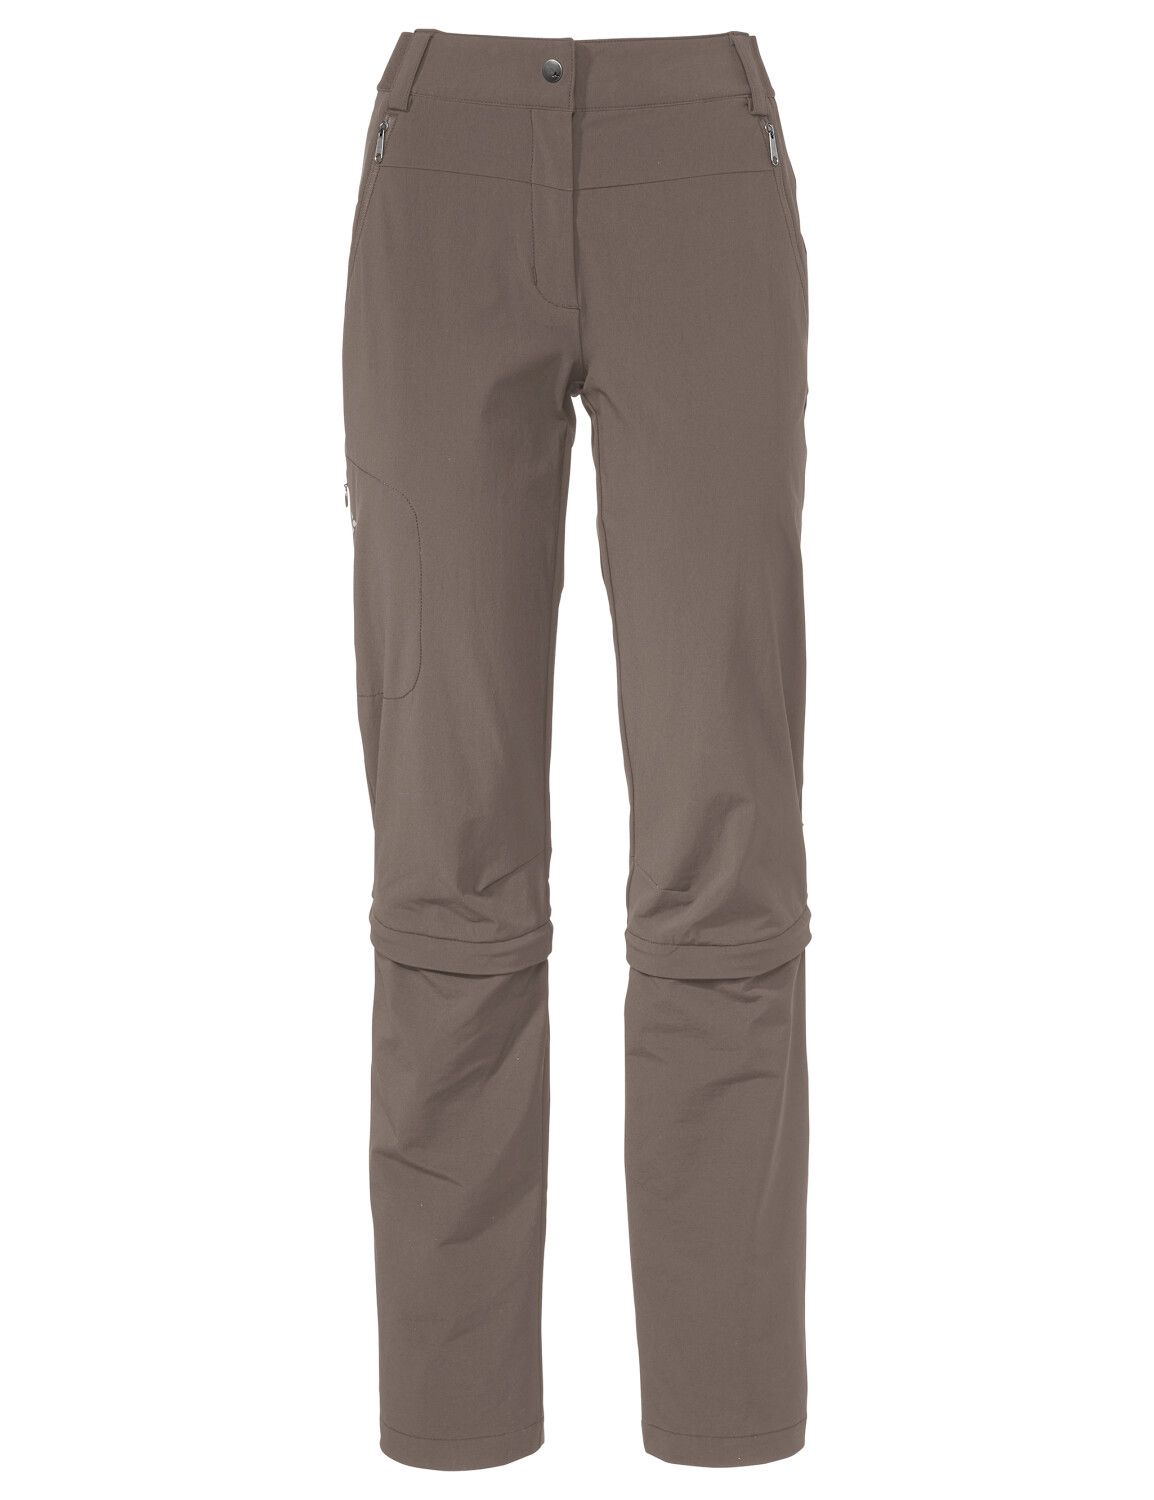 VAUDE Women's Farley Stretch Capri T-Zip Pants III (Bild 19)